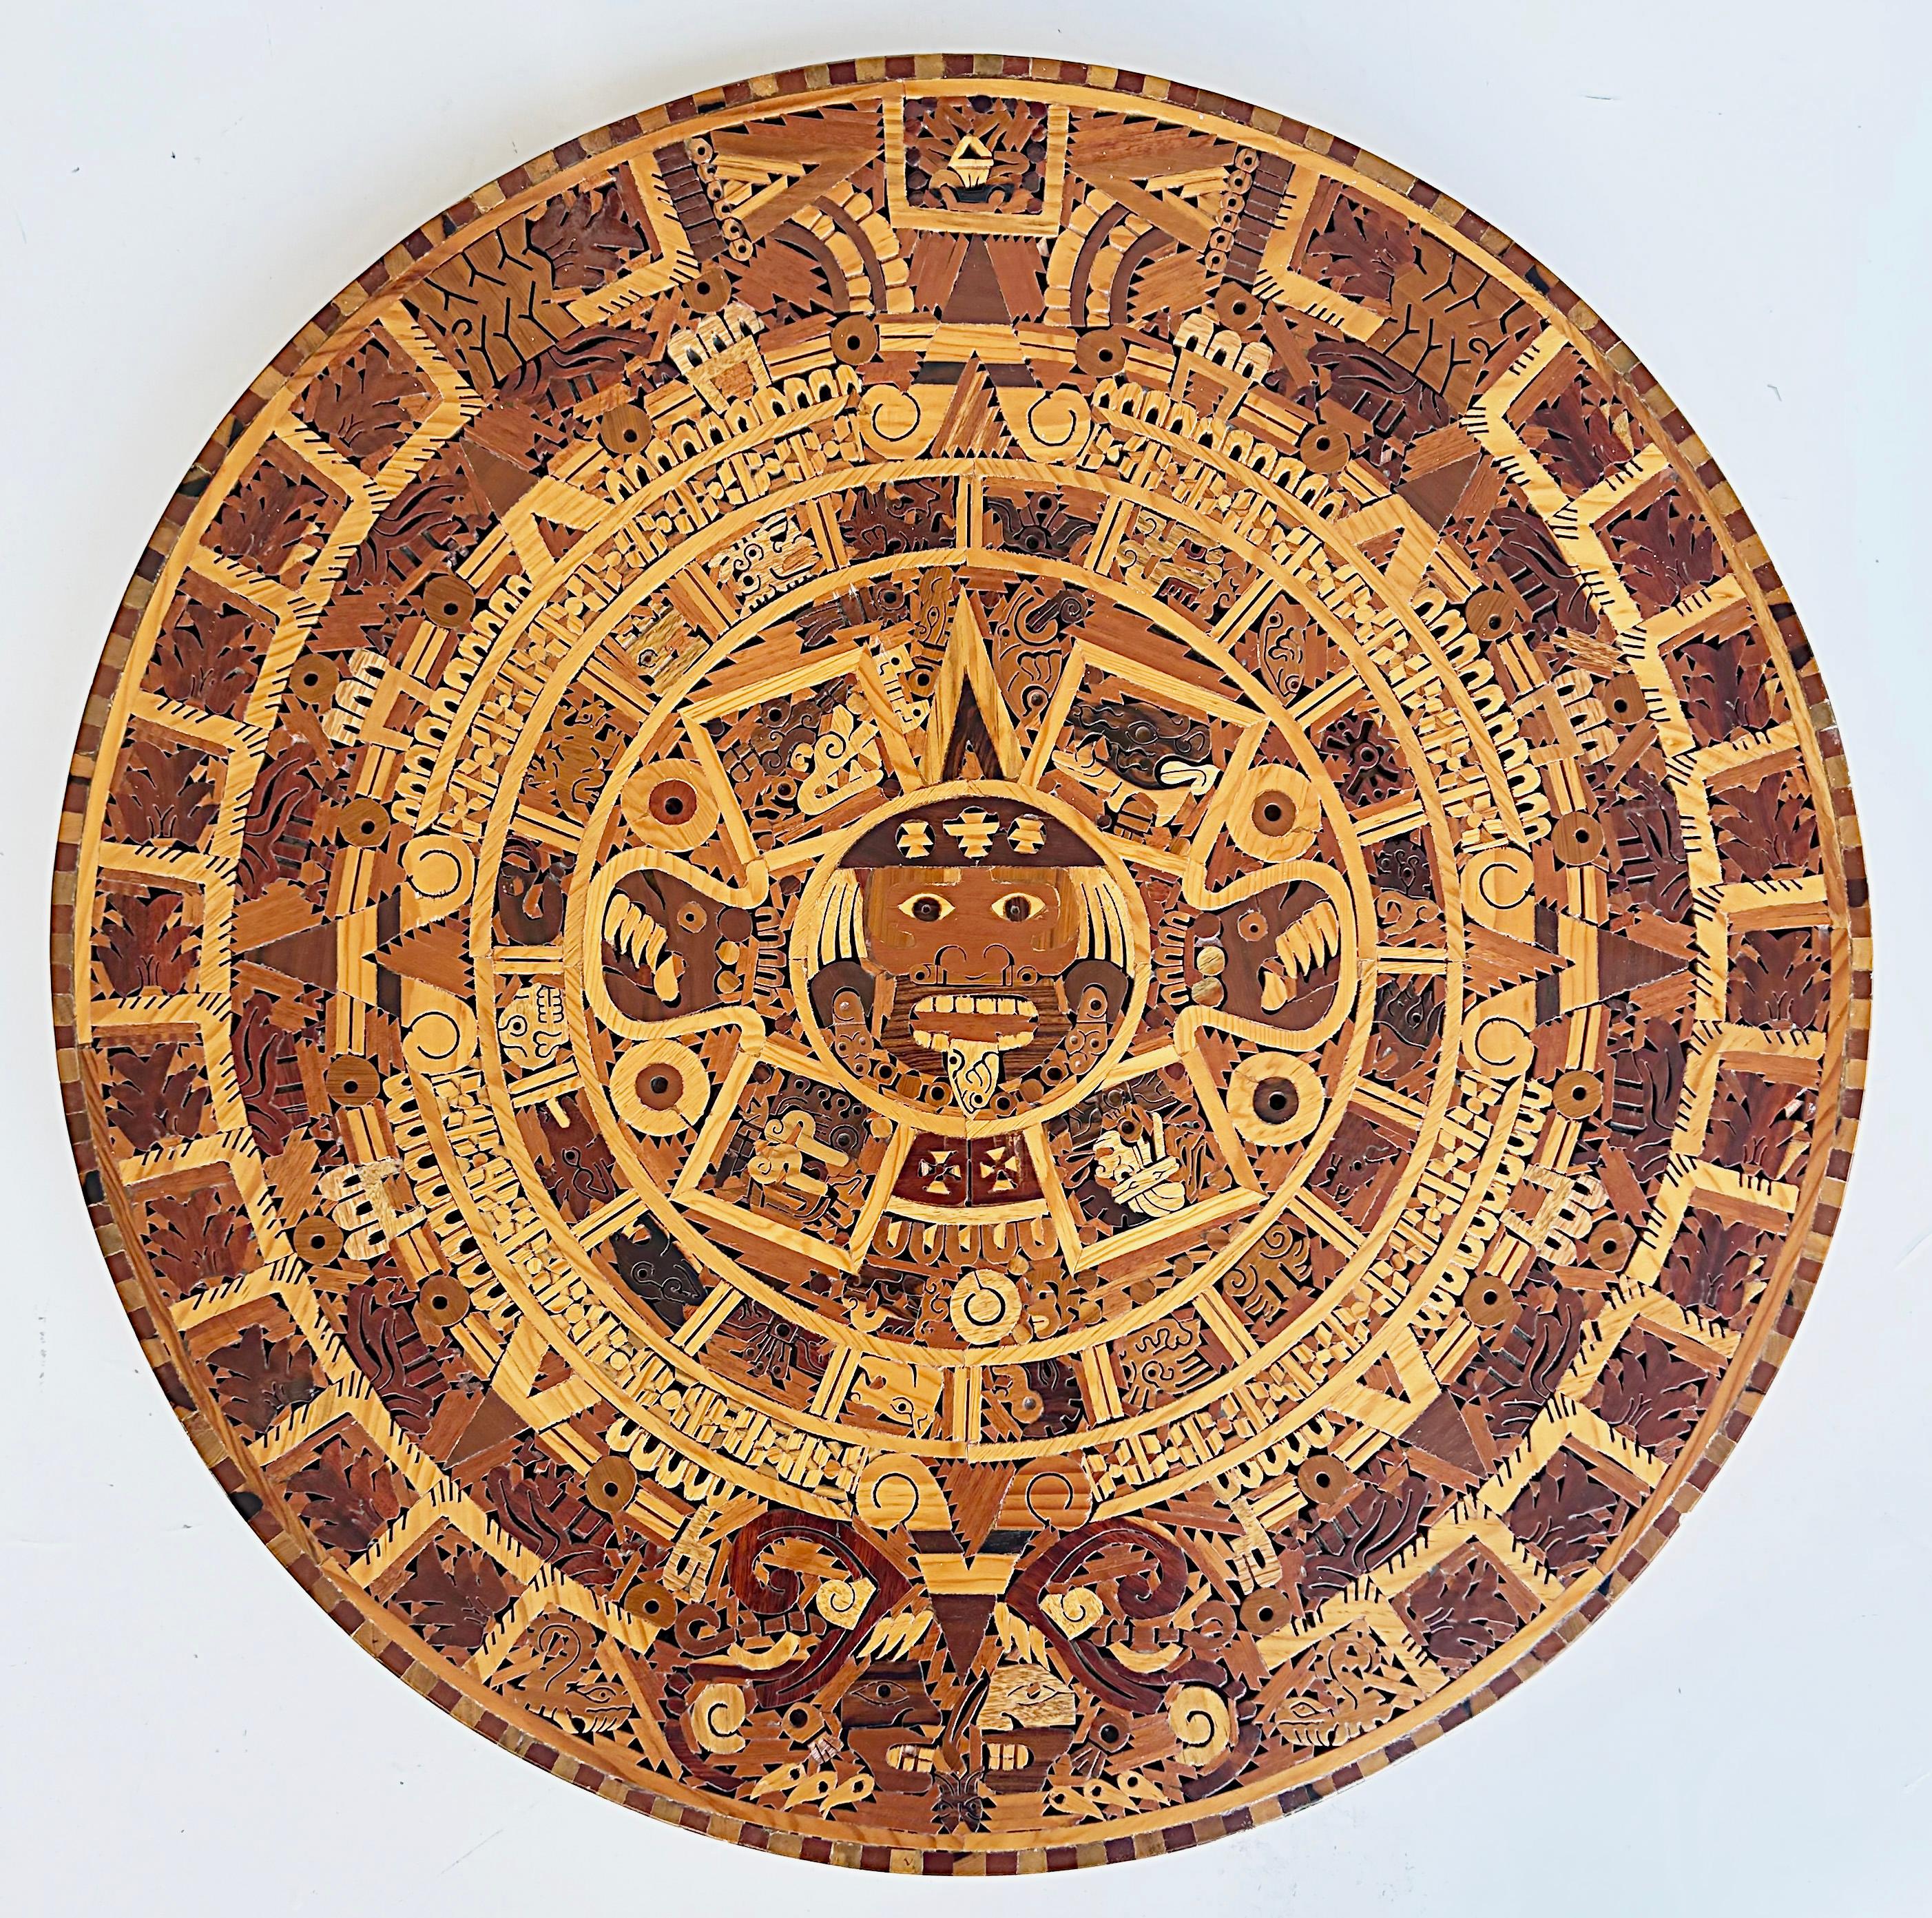 Handgefertigte mexikanische exotische Holz Azteken Kalender Wandskulptur

Es ist nur noch einer verfügbar.

Zum Verkauf angeboten wird ein vom Künstler signierter handgefertigter tropischer exotischer Hartholz Aztekenkalender (Cuauhixalli)